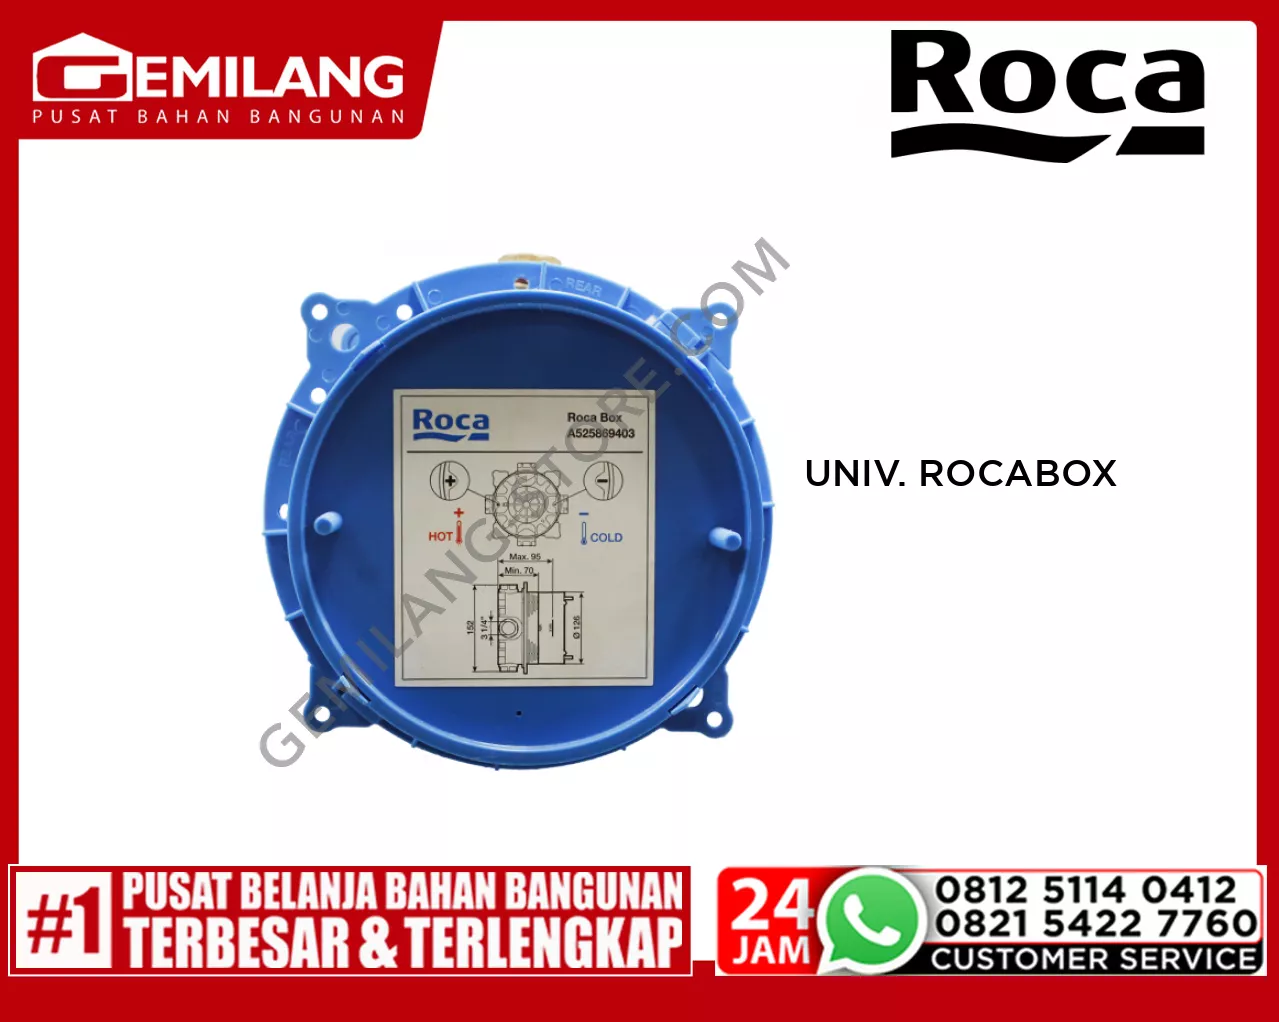 ROCA UNIVERSAL ROCABOX FRCSF-MT-A52586940V